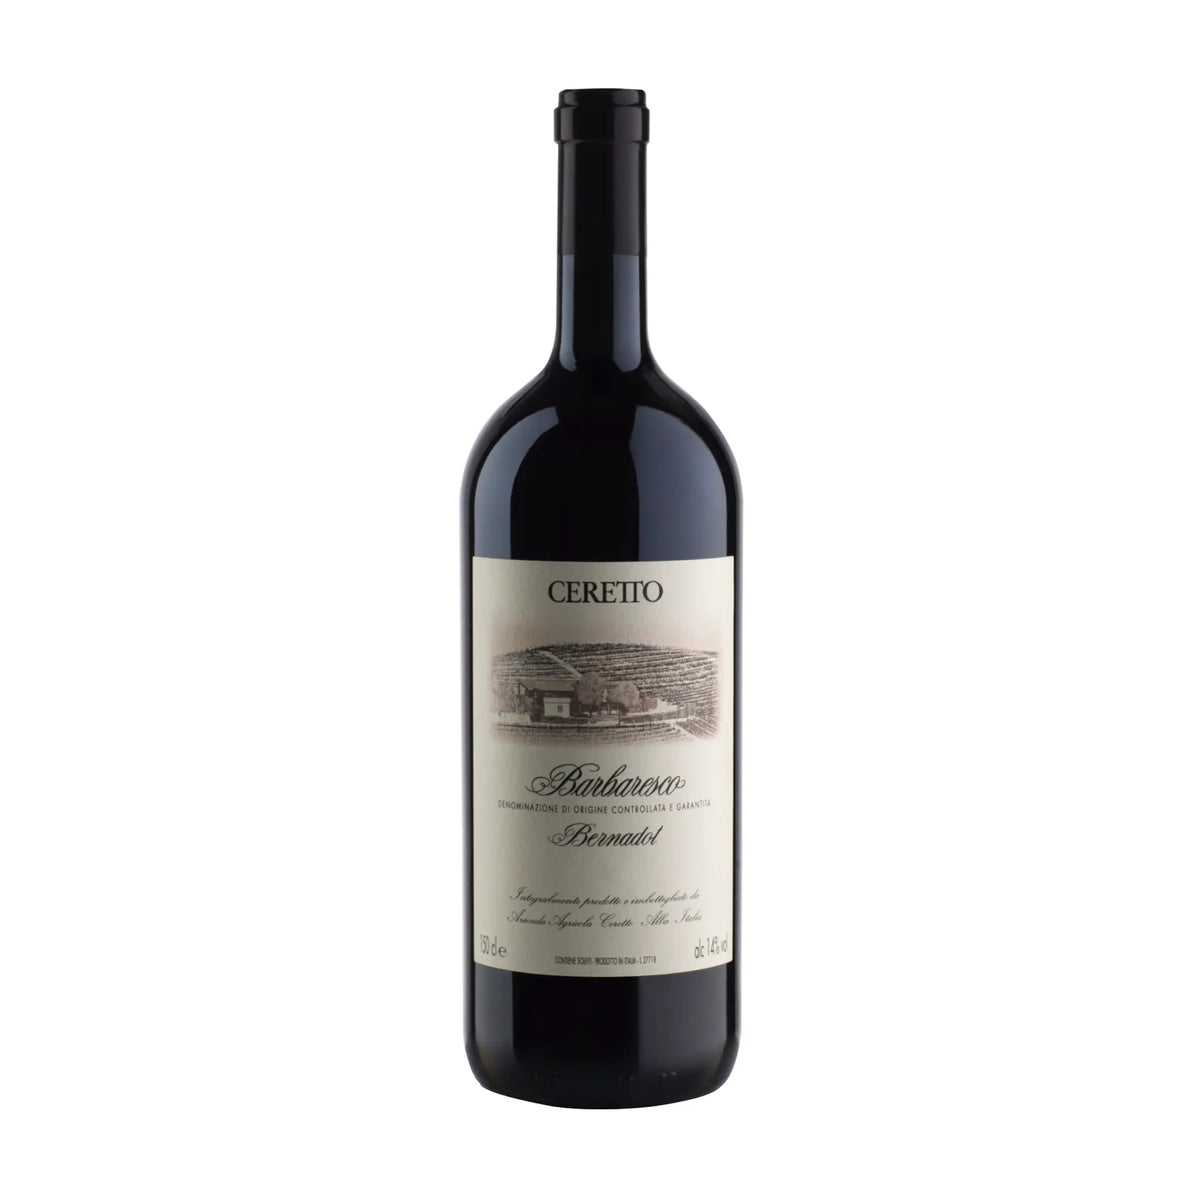 Ceretto-Rotwein-Nebbiolo-Italien-Piemont-2015 Barbaresco Bernadot 1.5l-WINECOM